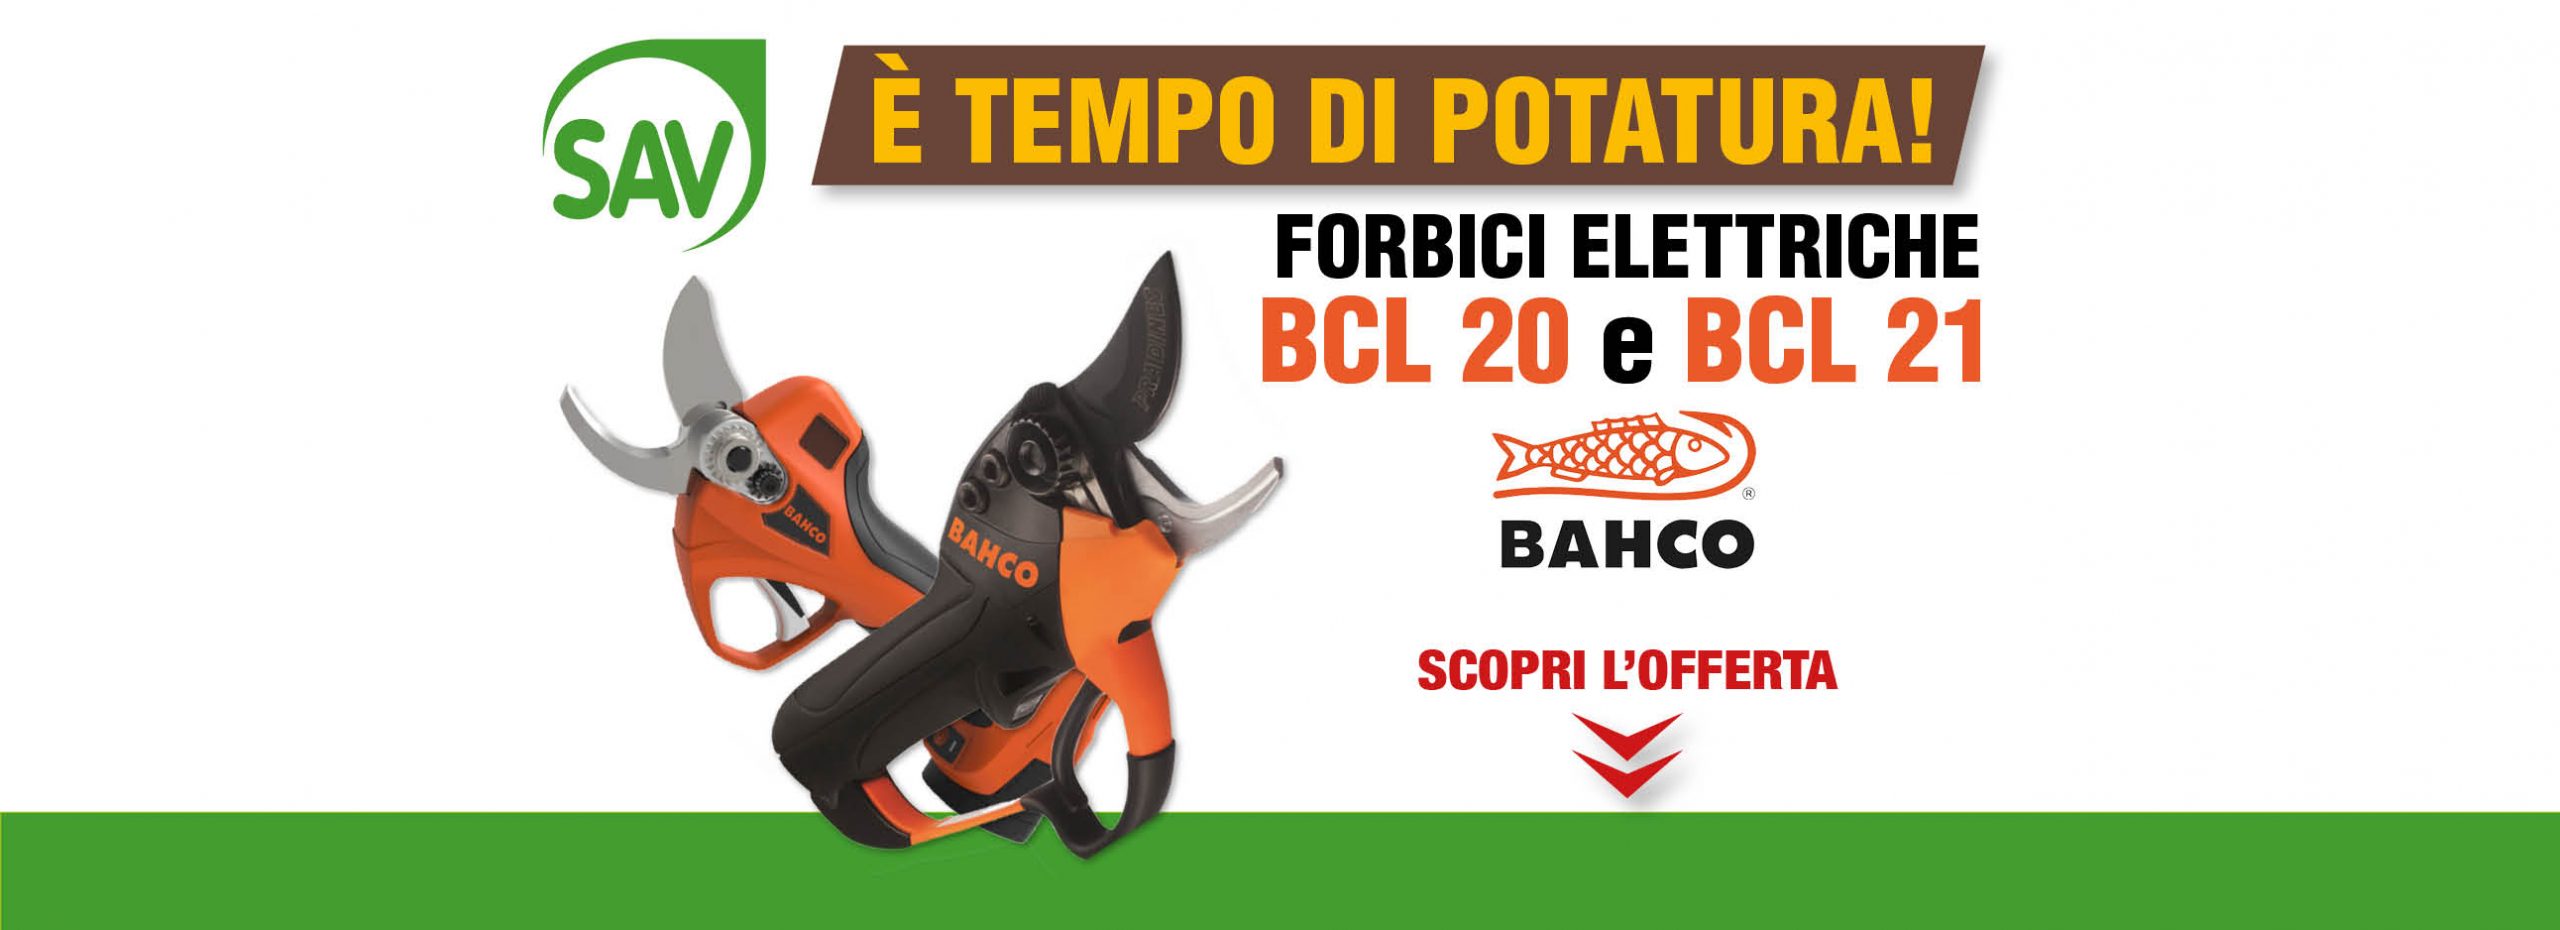 Forbici elettriche BCL20 e BCL21 Bahco SAV